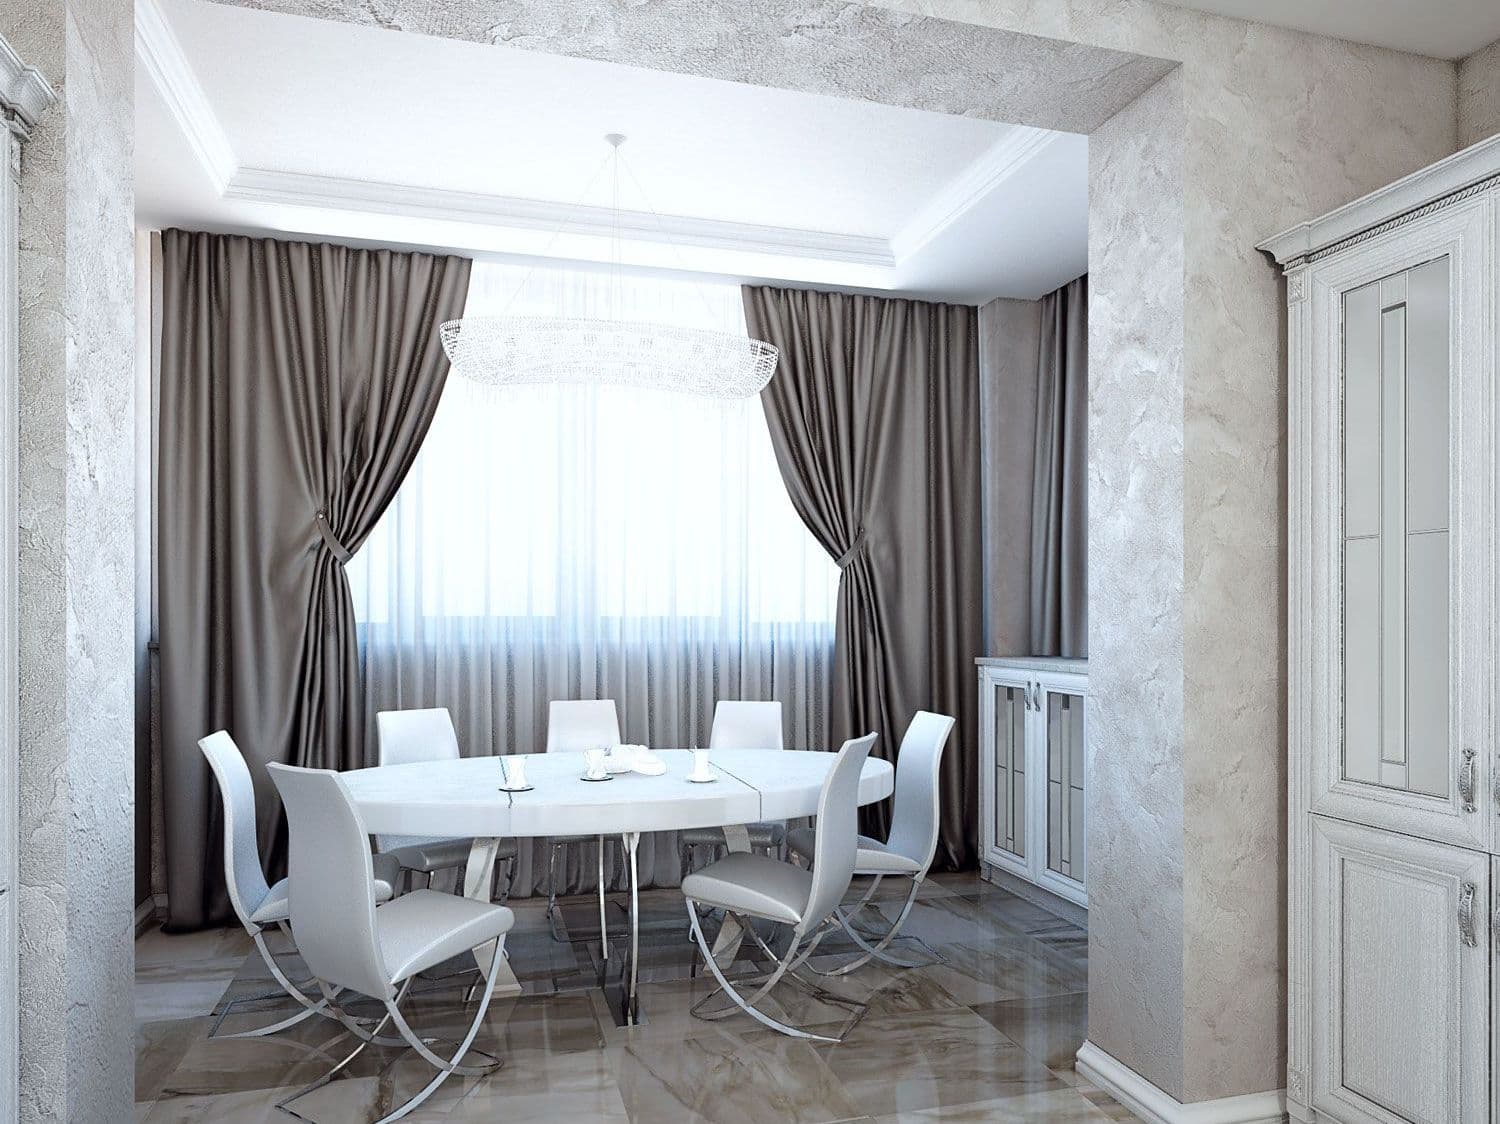 Дизайн столовой с белым кухонным столом, декоративной штукатуркой, хрустальной люстрой, в современной классическом стиле, в светлых серых тонах